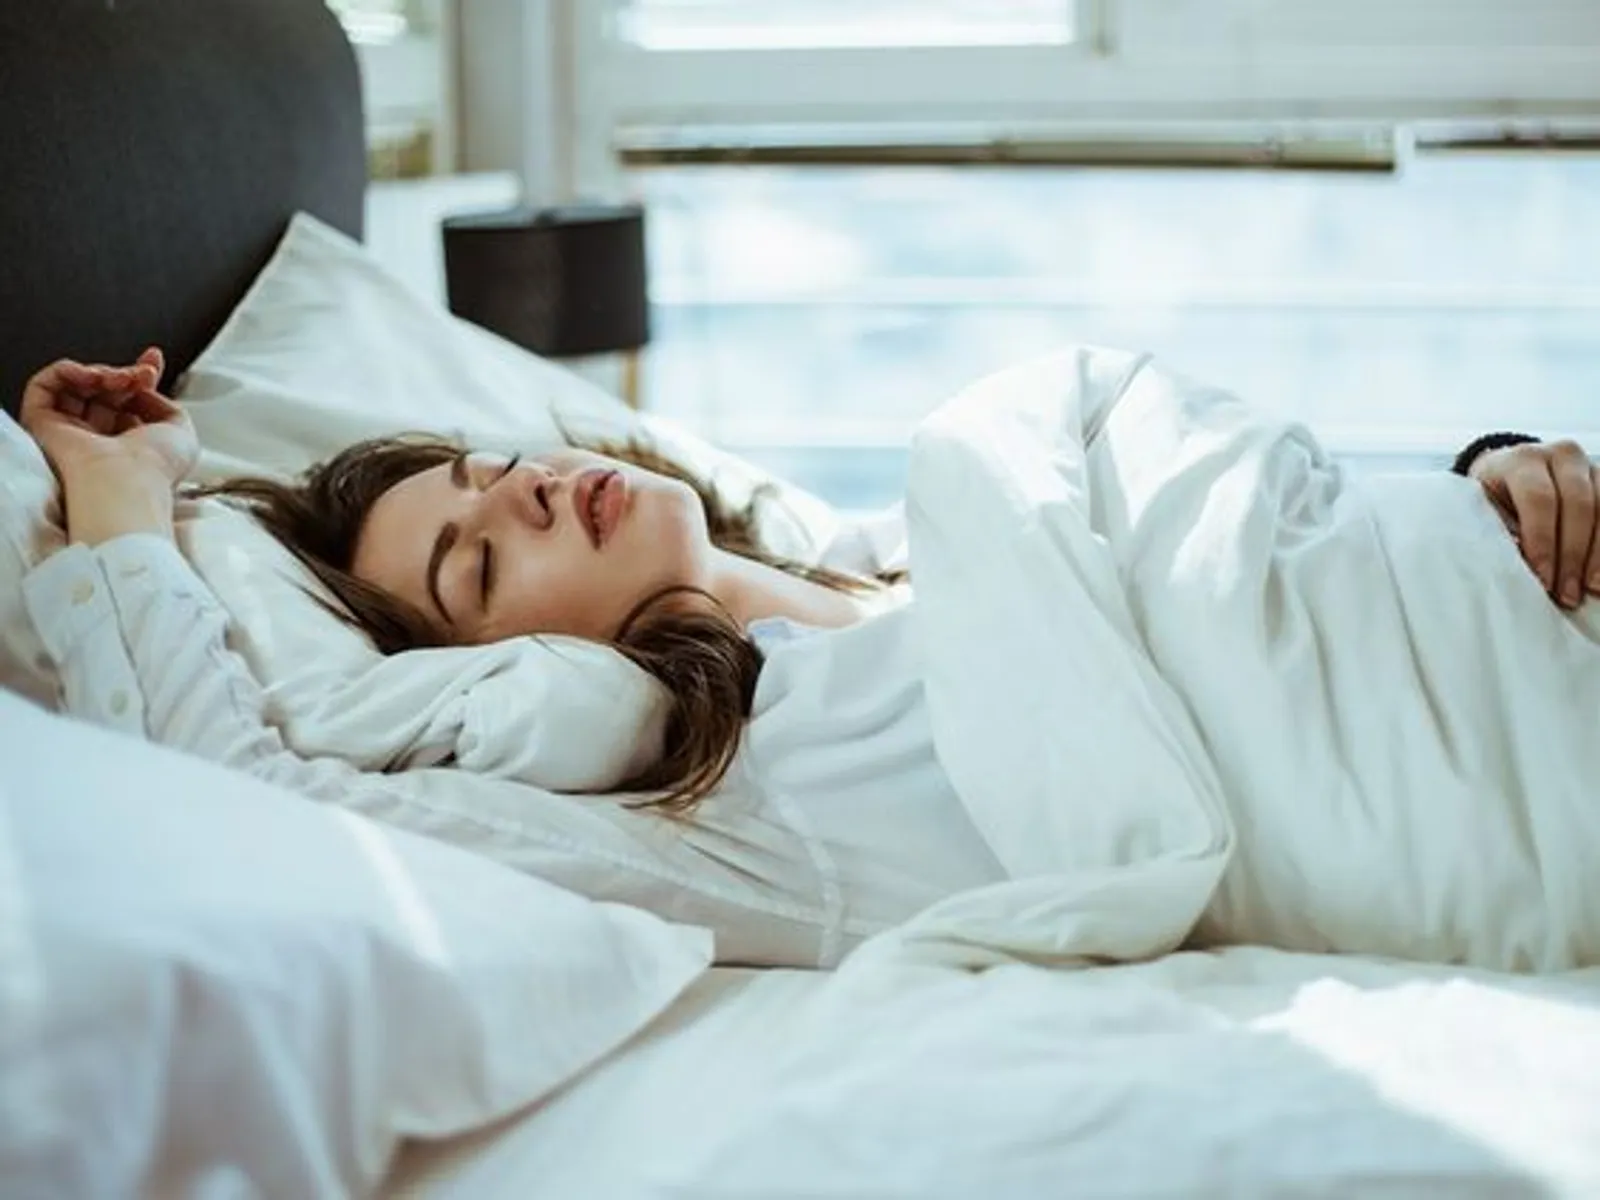 Mengenal Sexsomnia, Aktivitas Bercinta Saat Tertidur Pulas